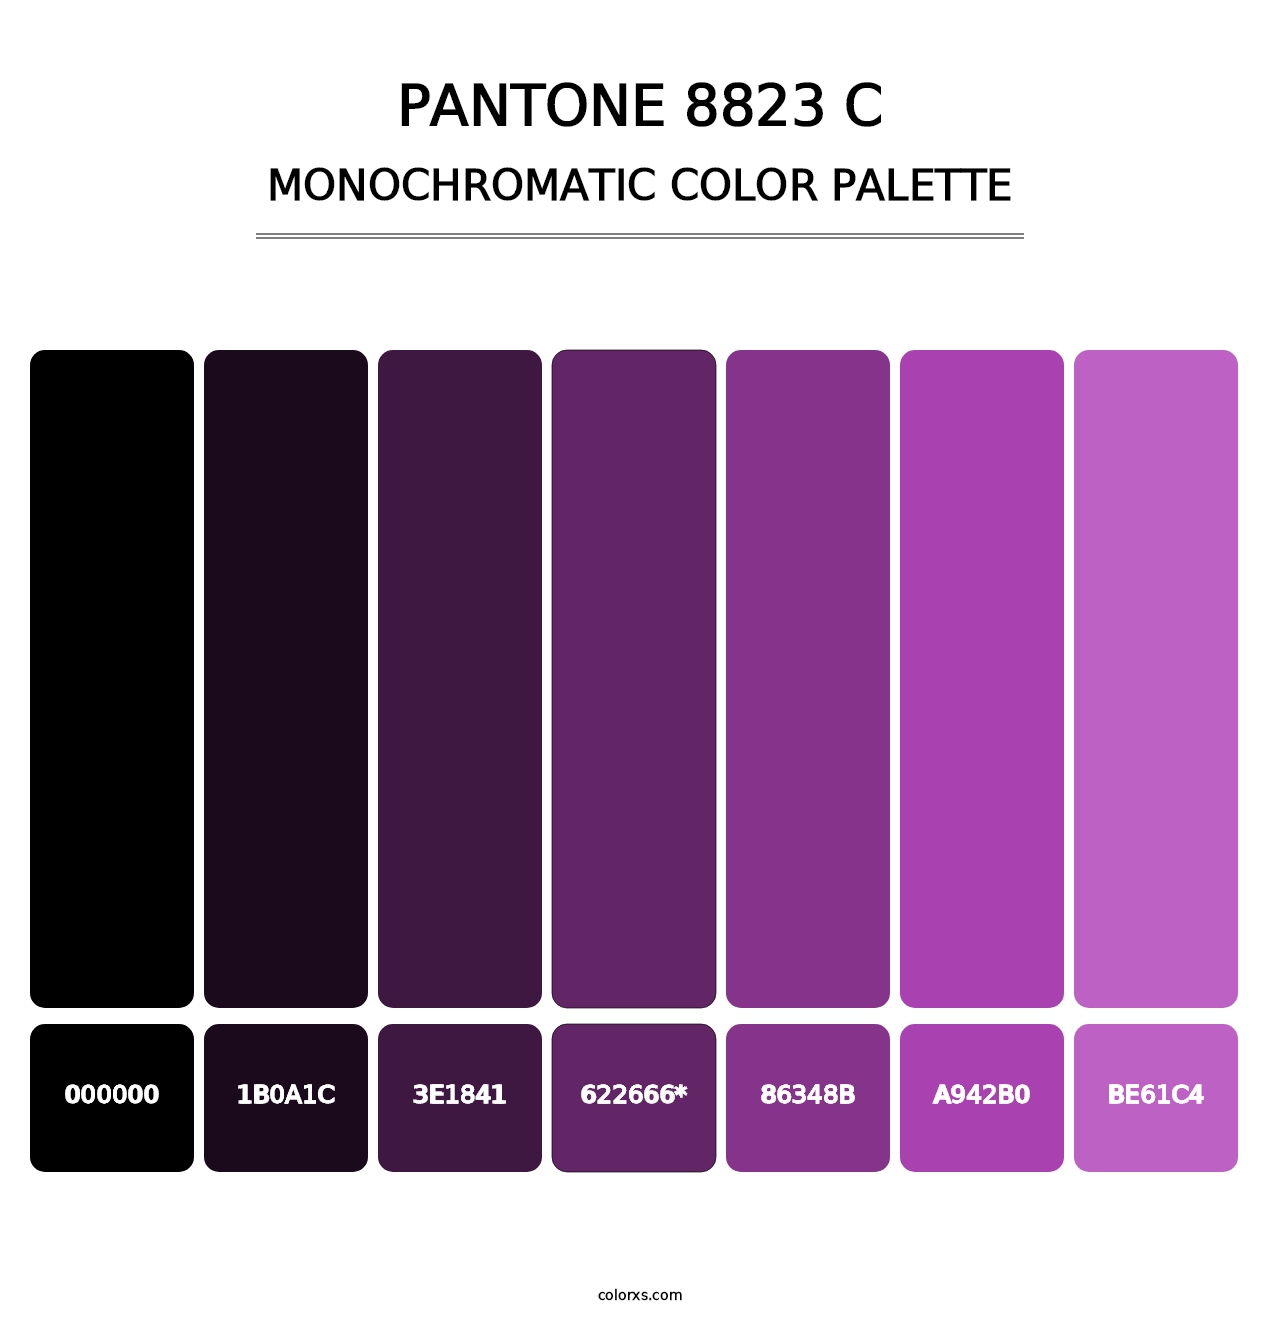 PANTONE 8823 C - Monochromatic Color Palette